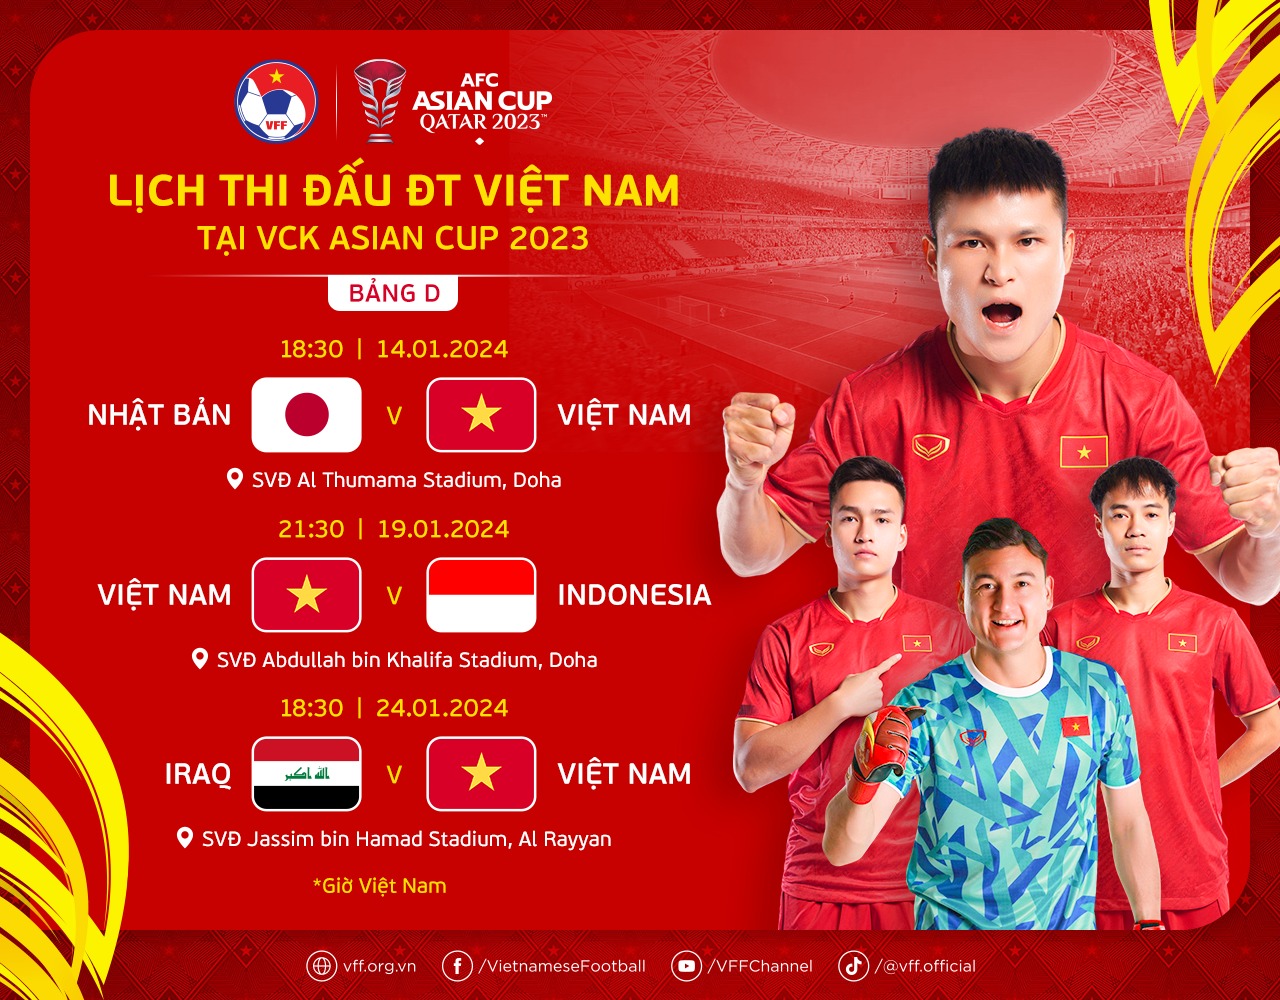 Lịch thi đấu chính thức của Đội tuyển Việt Nam tại Asian Cup 2023